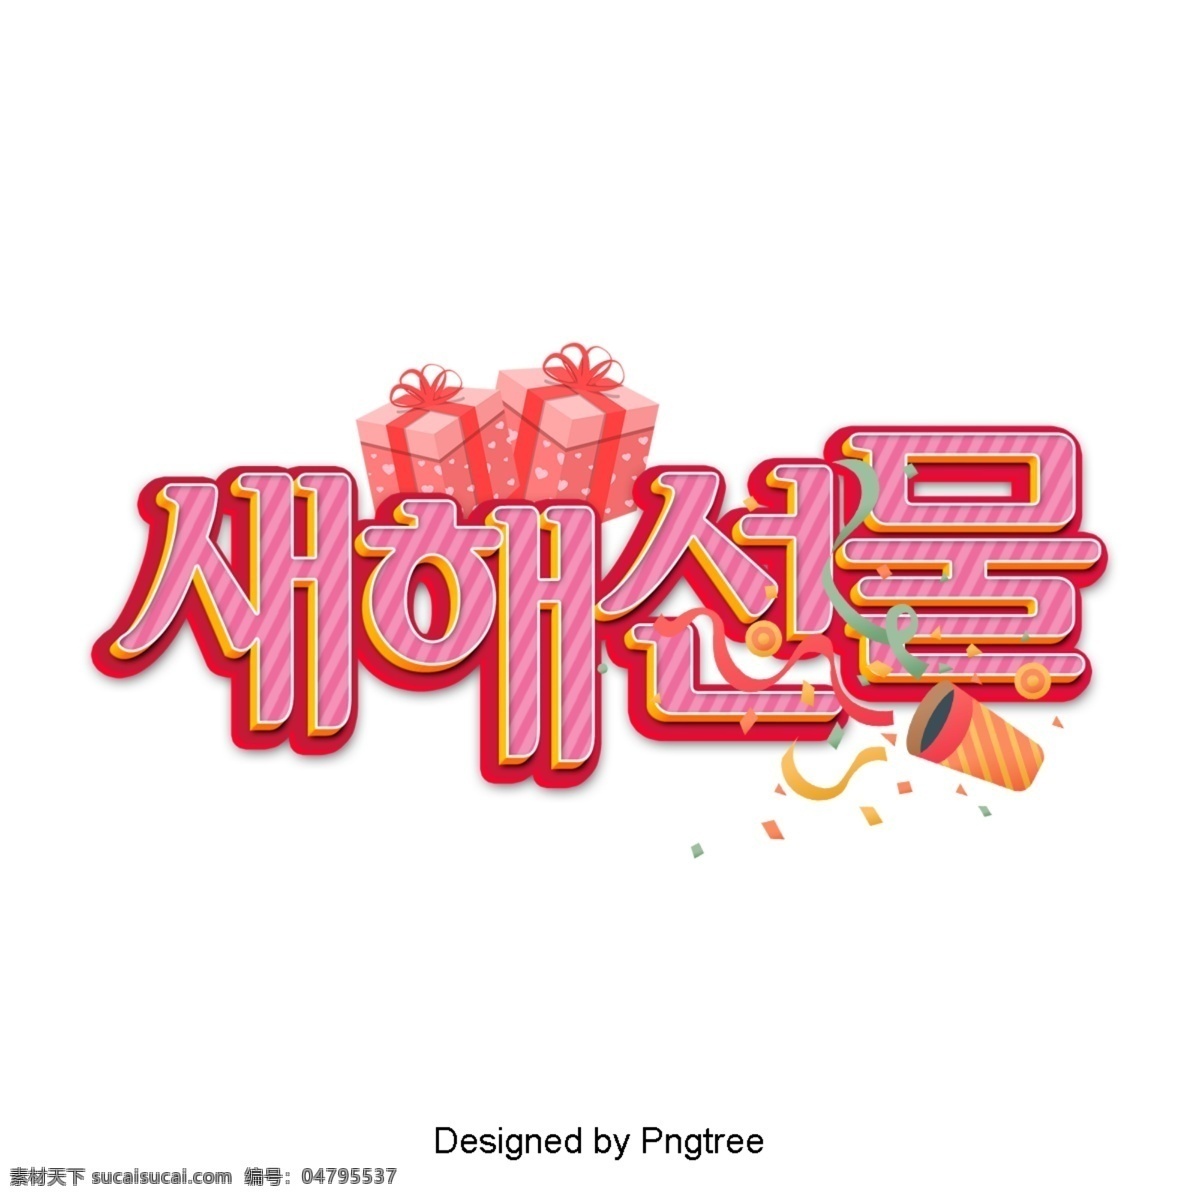 继 韩国现代 时尚界 之后 祝你新年快乐 现代 时尚 韩国 现场 装饰 字形 彩色绘画 动画片 新年 春节 礼品